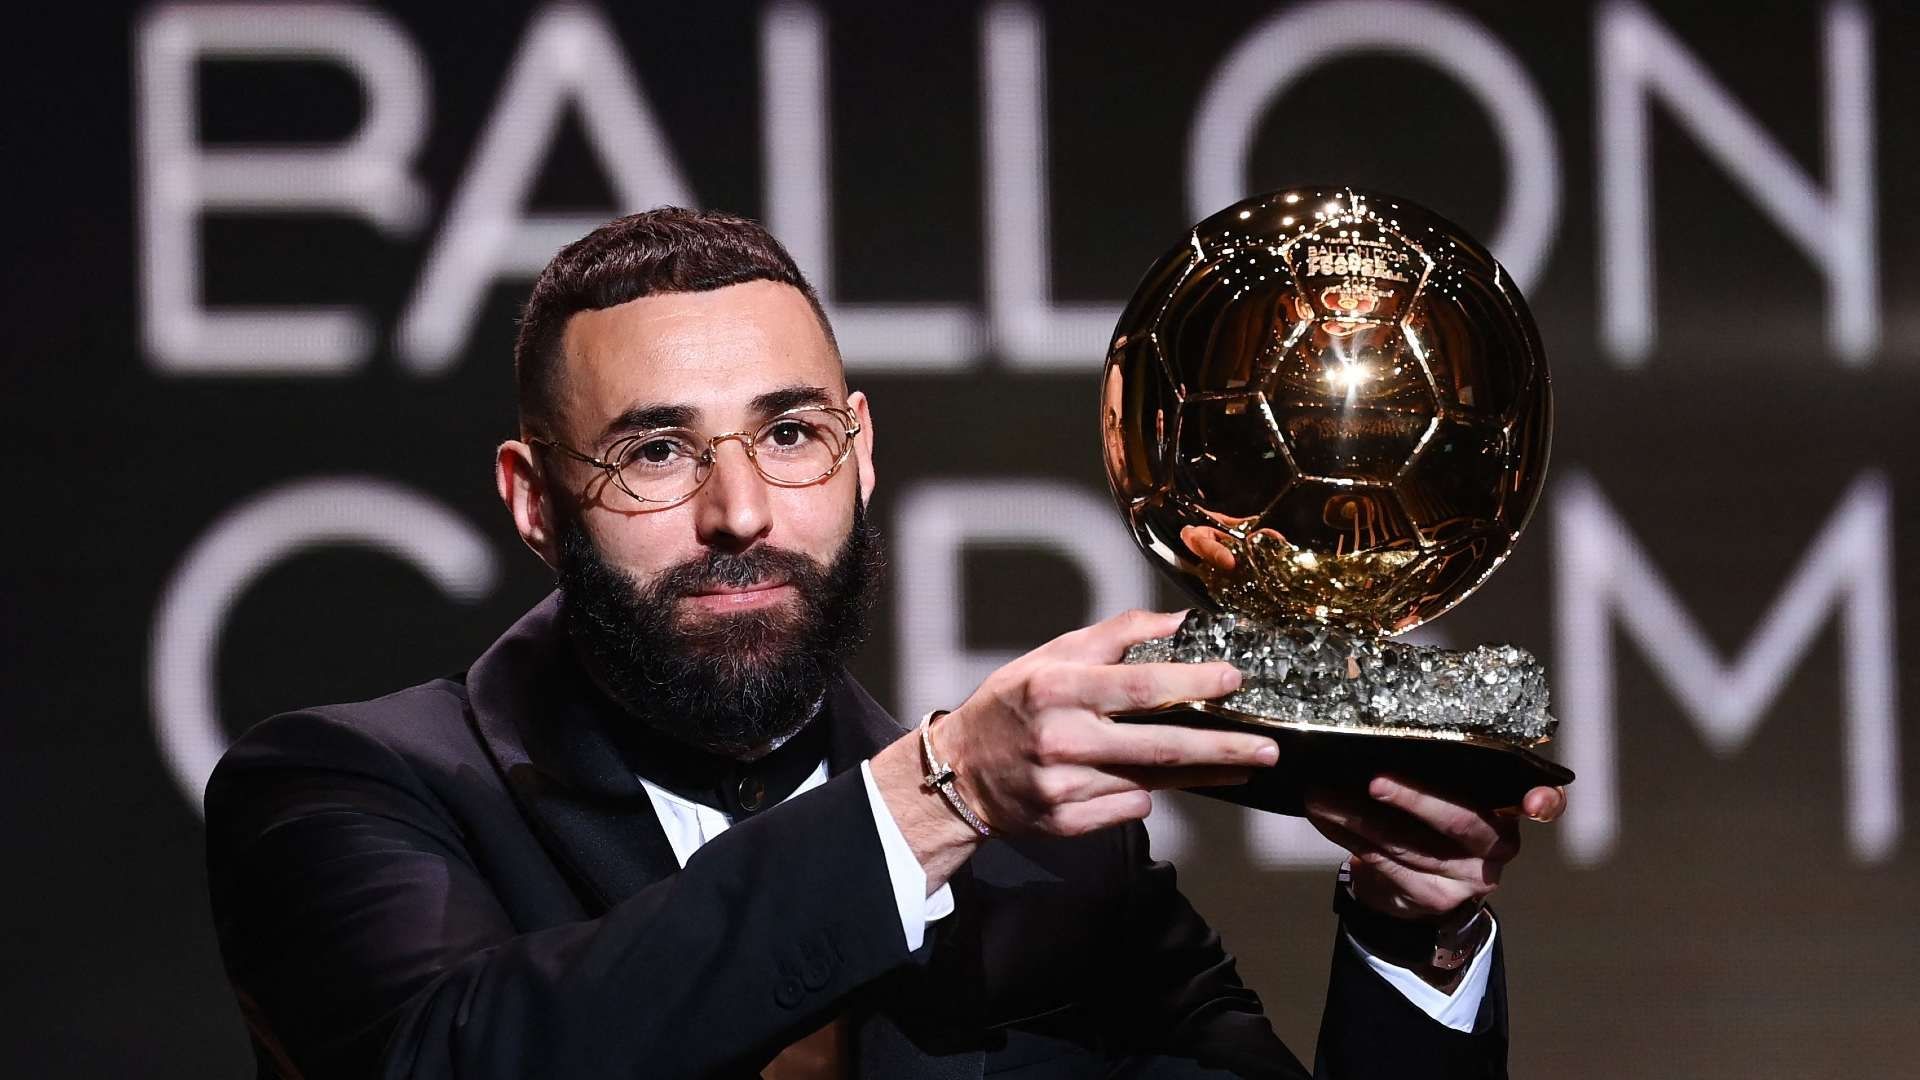 Con el Ballon d’Or de Benzema, La Liga se mantiene como una de las más ganadoras